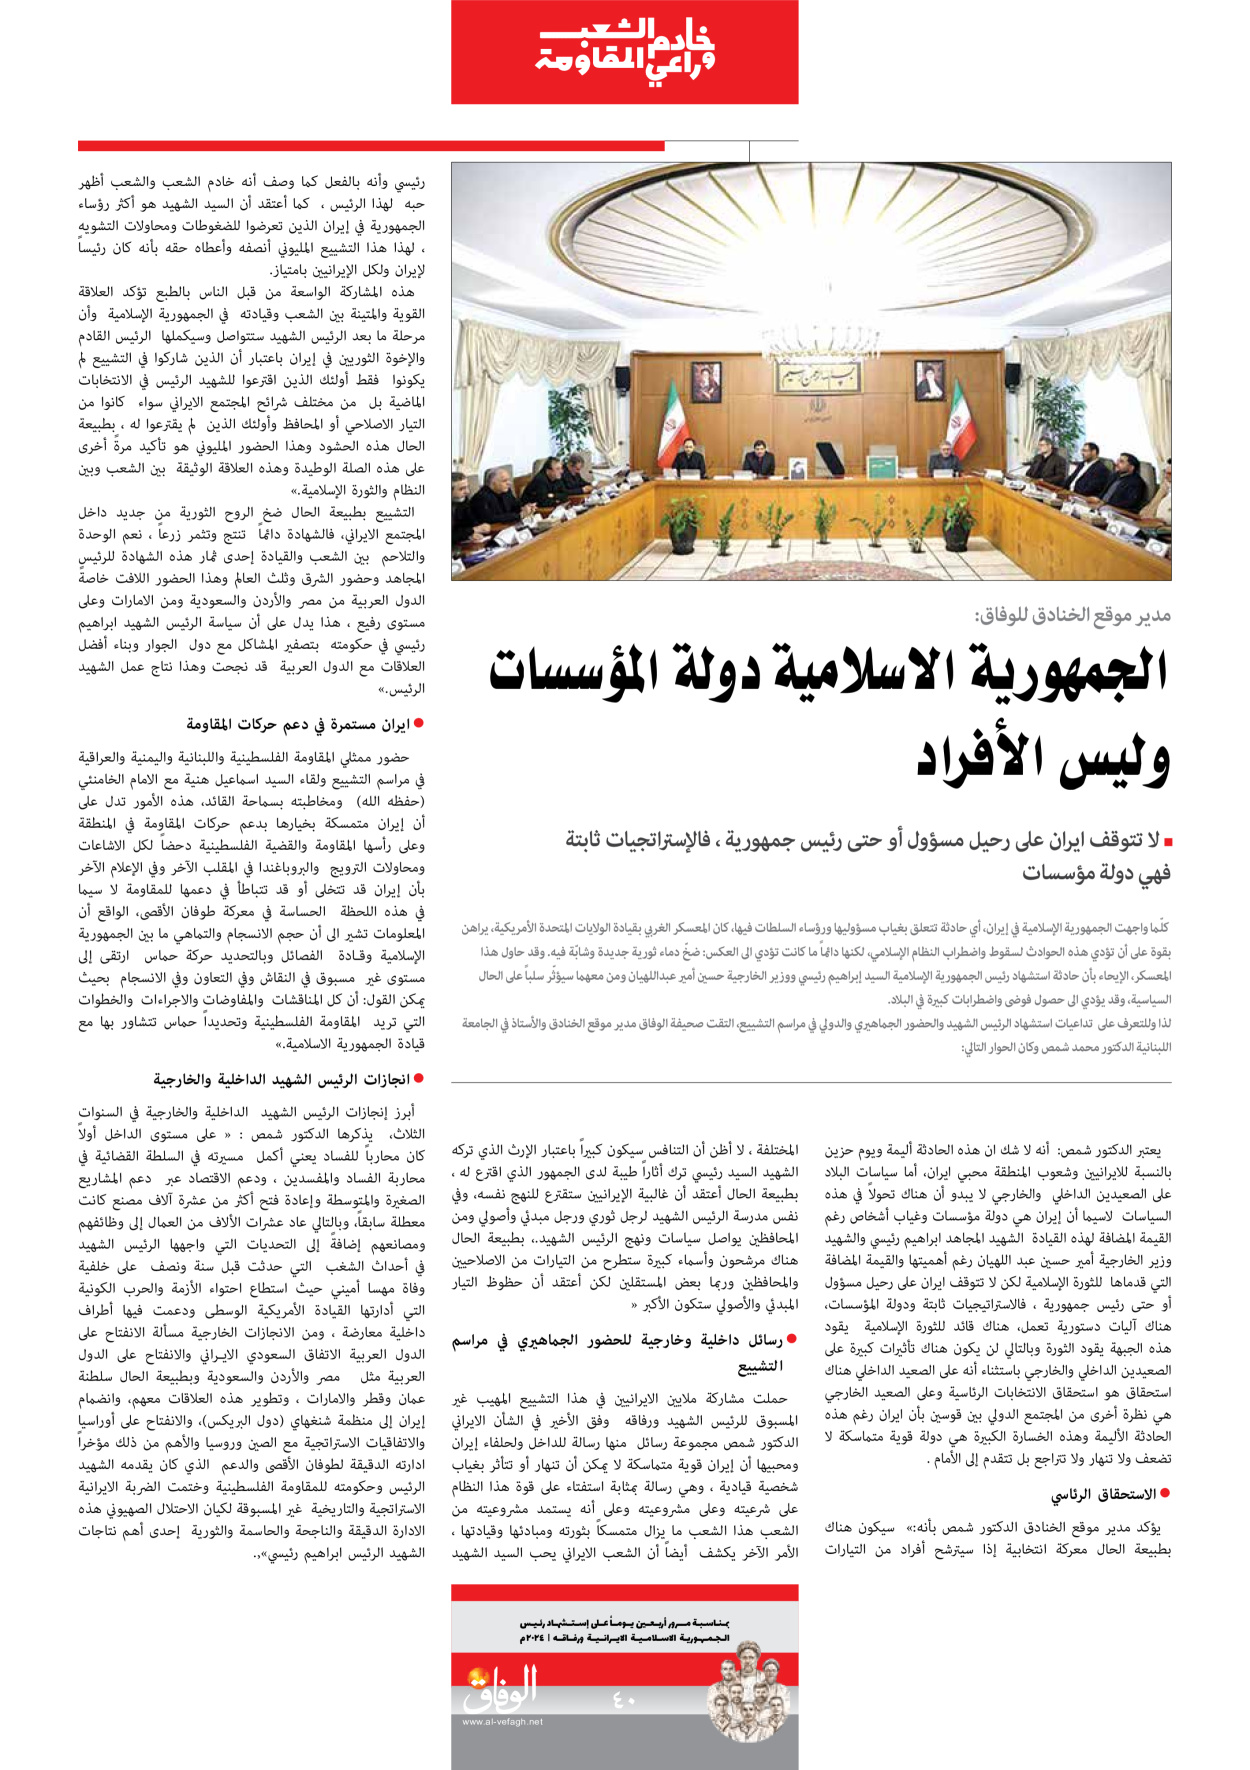 صحیفة ایران الدولیة الوفاق - ملحق ویژه نامه چهلم شهید رییسی - ٢٩ يونيو ٢٠٢٤ - الصفحة ٤۰